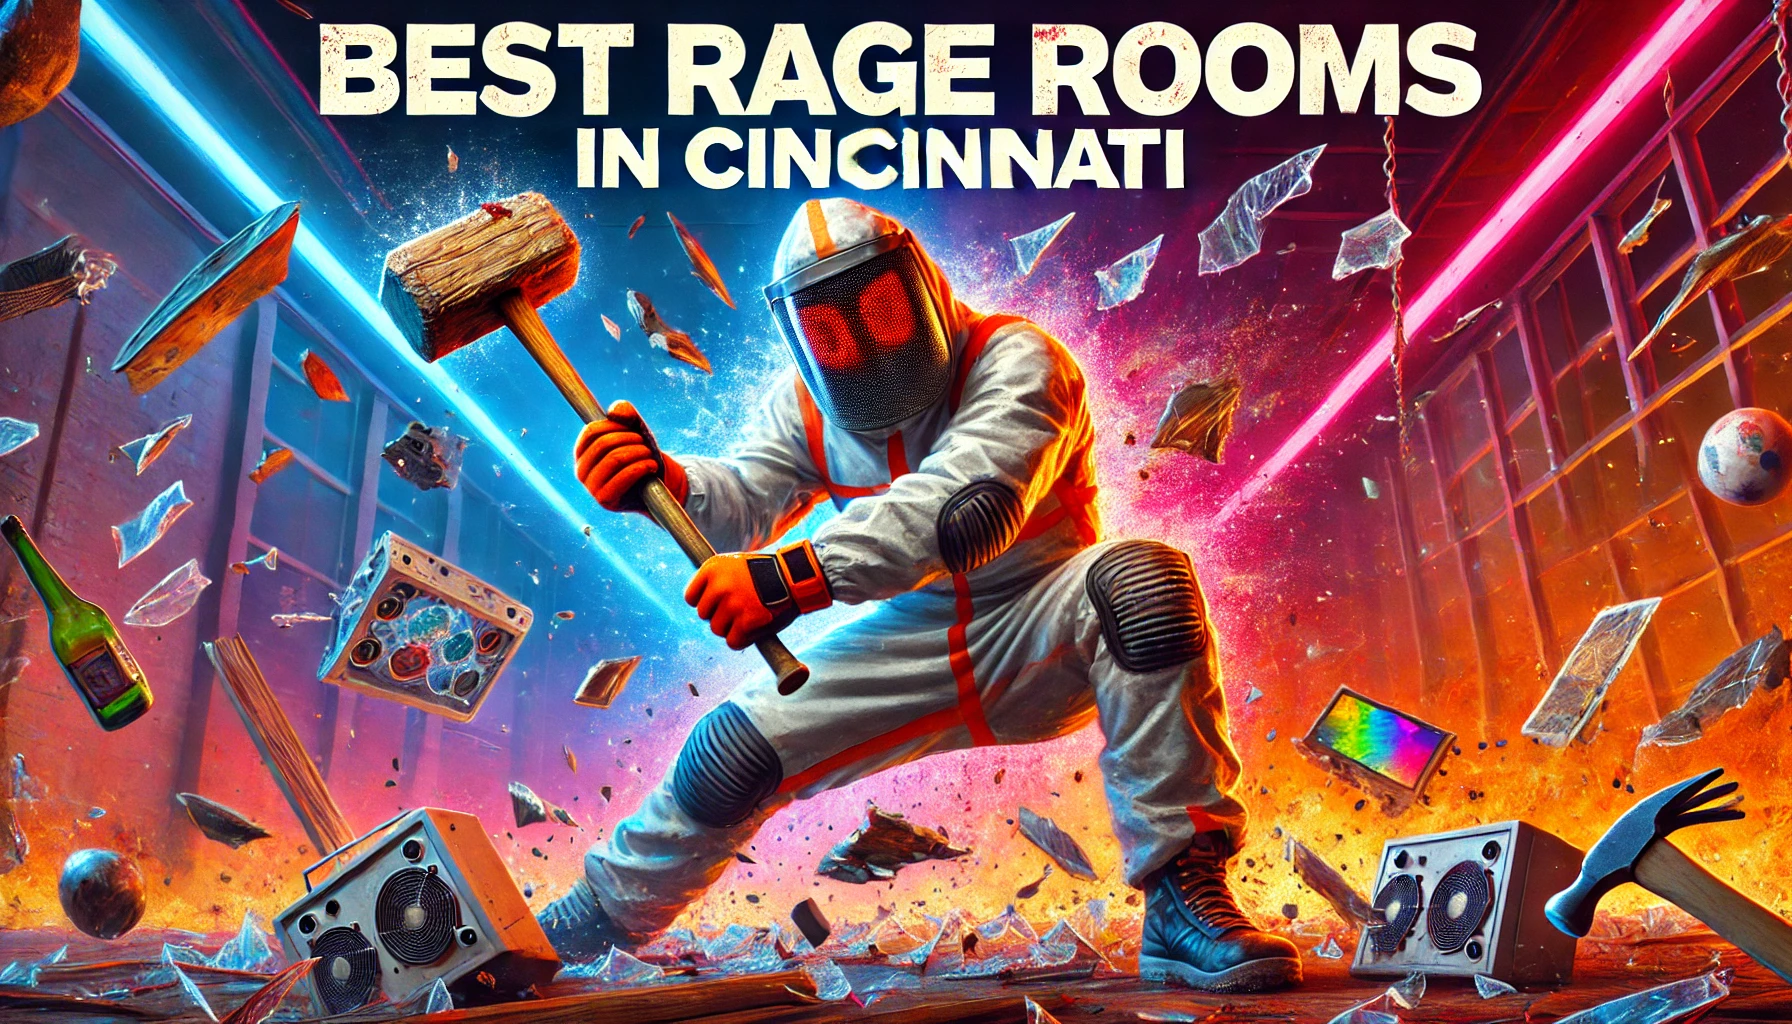 Best Rage Rooms In Cincinnati